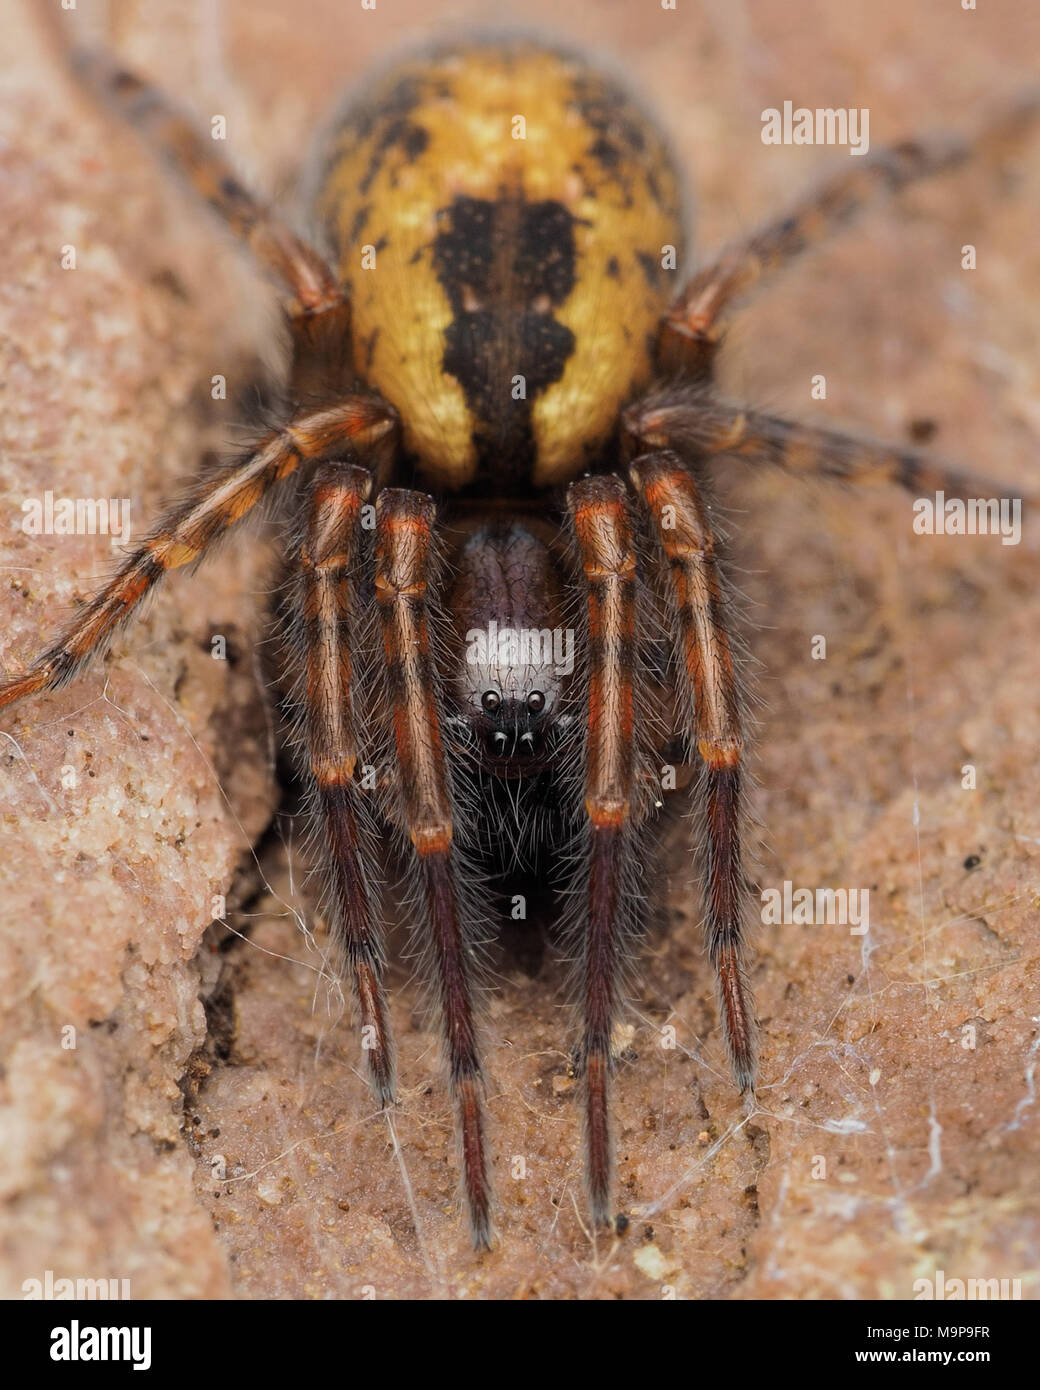 Lace-Spider web (Amaurobius sp.) en dessous d'un rocher. Tipperary, Irlande Banque D'Images